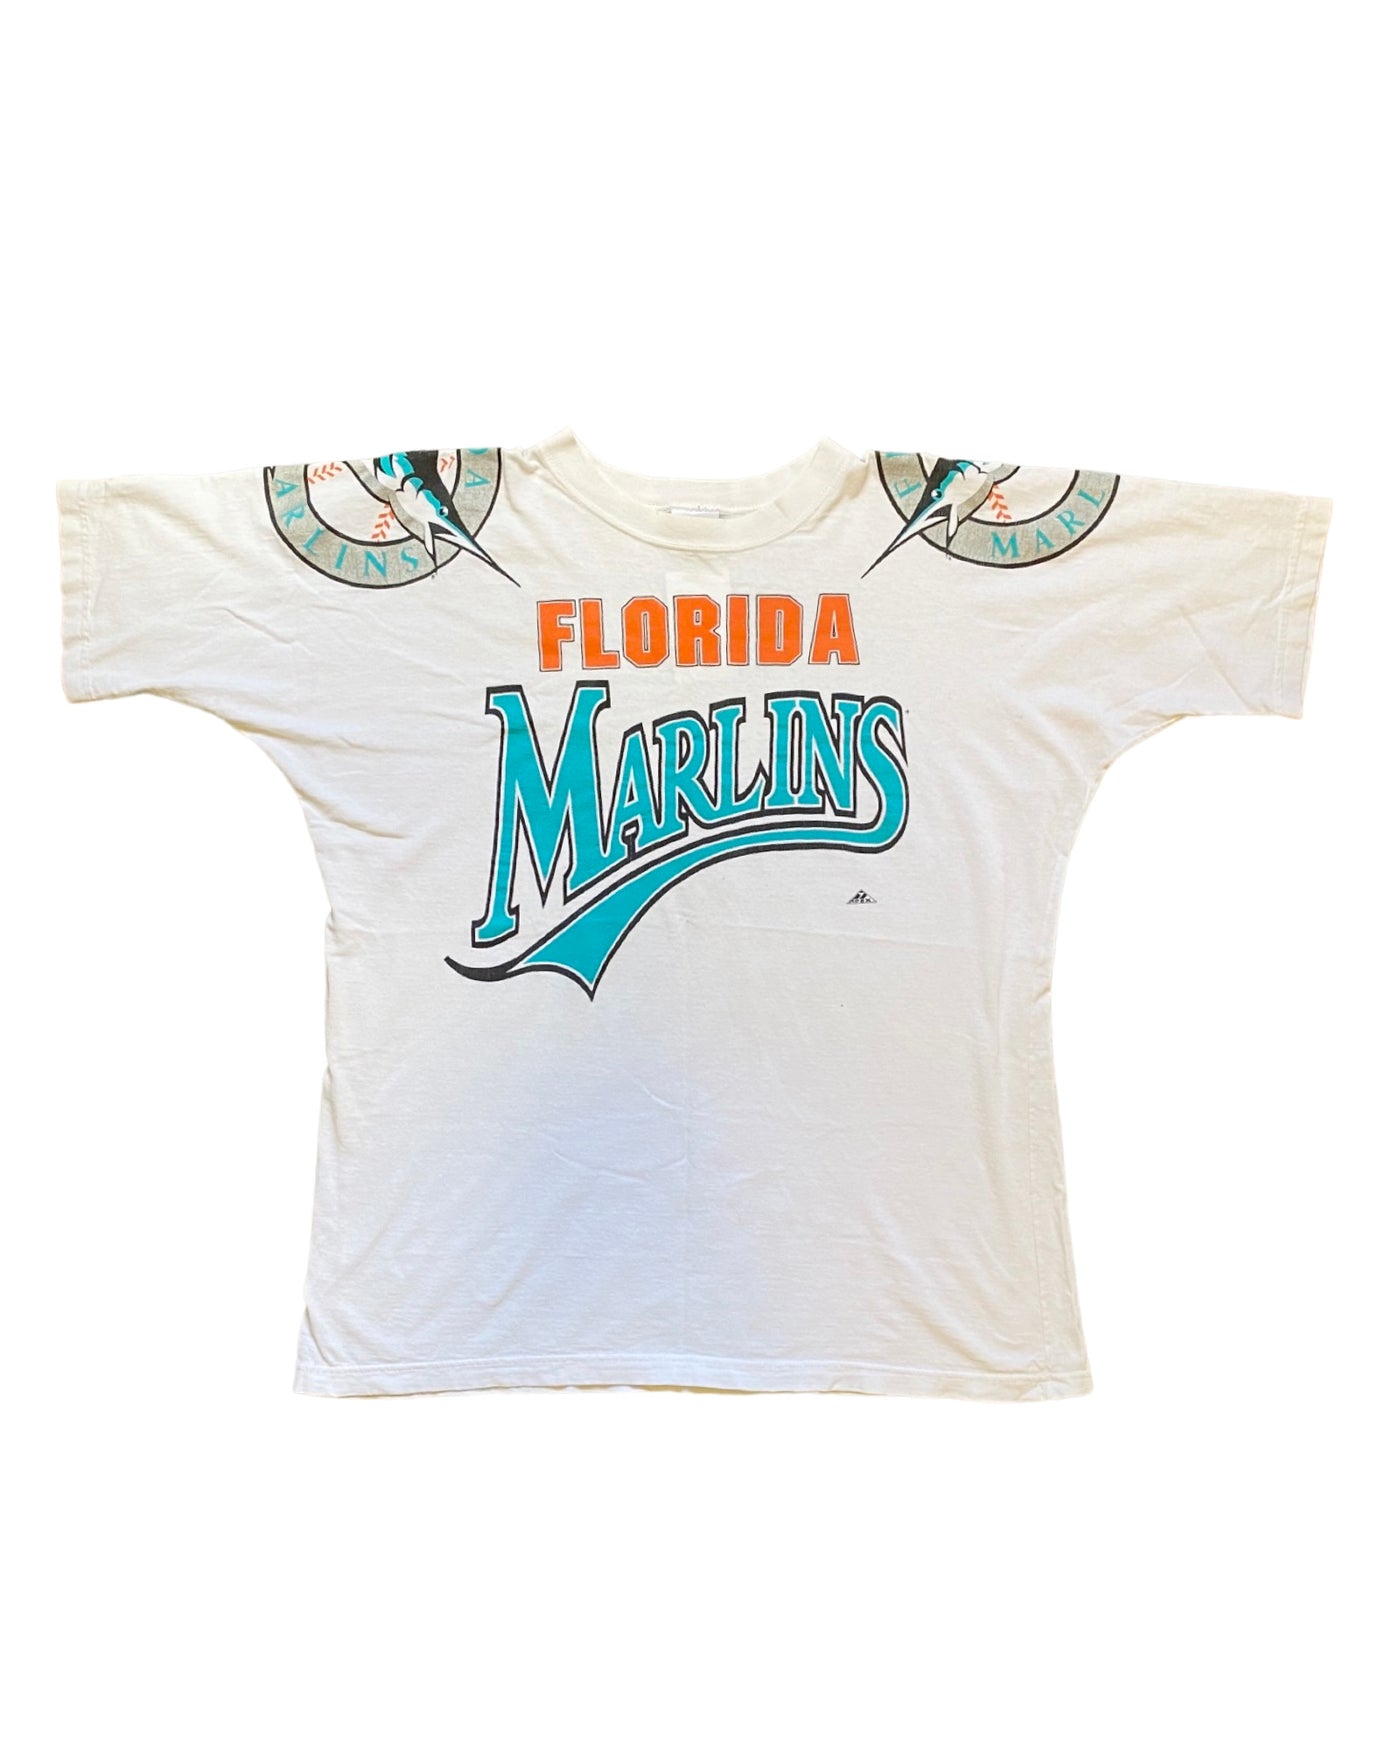 Vintage 90s Floridian Marlins T-Shirt